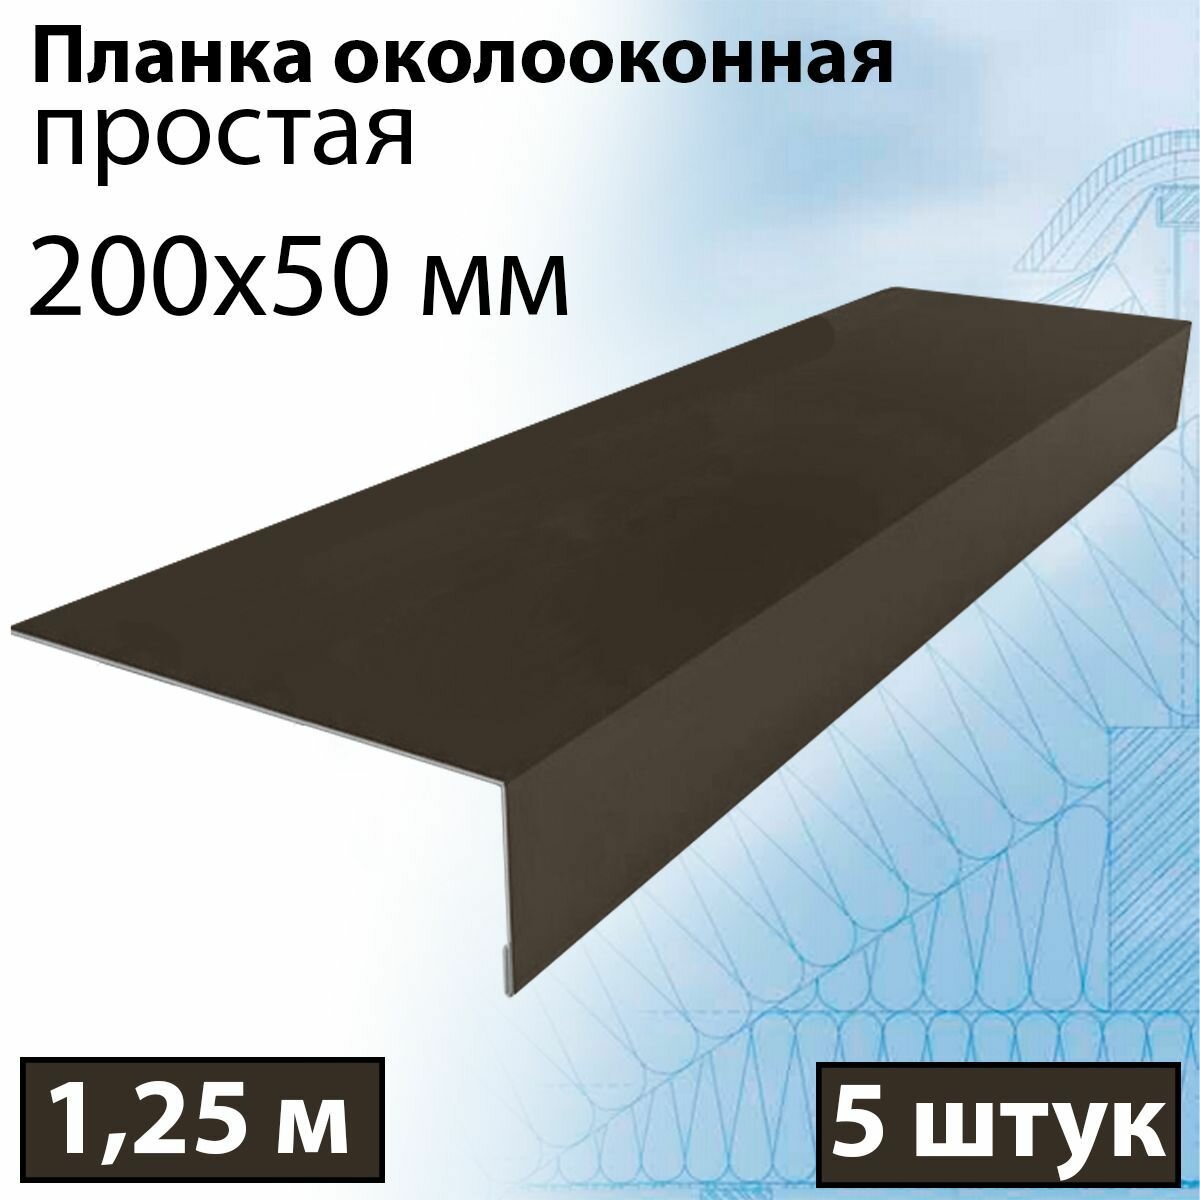 Планка околооконная простая 1,25 м (200х50 мм) 5 штук Планка лобовая металлическая (RR 32) темно-коричневый - фотография № 1